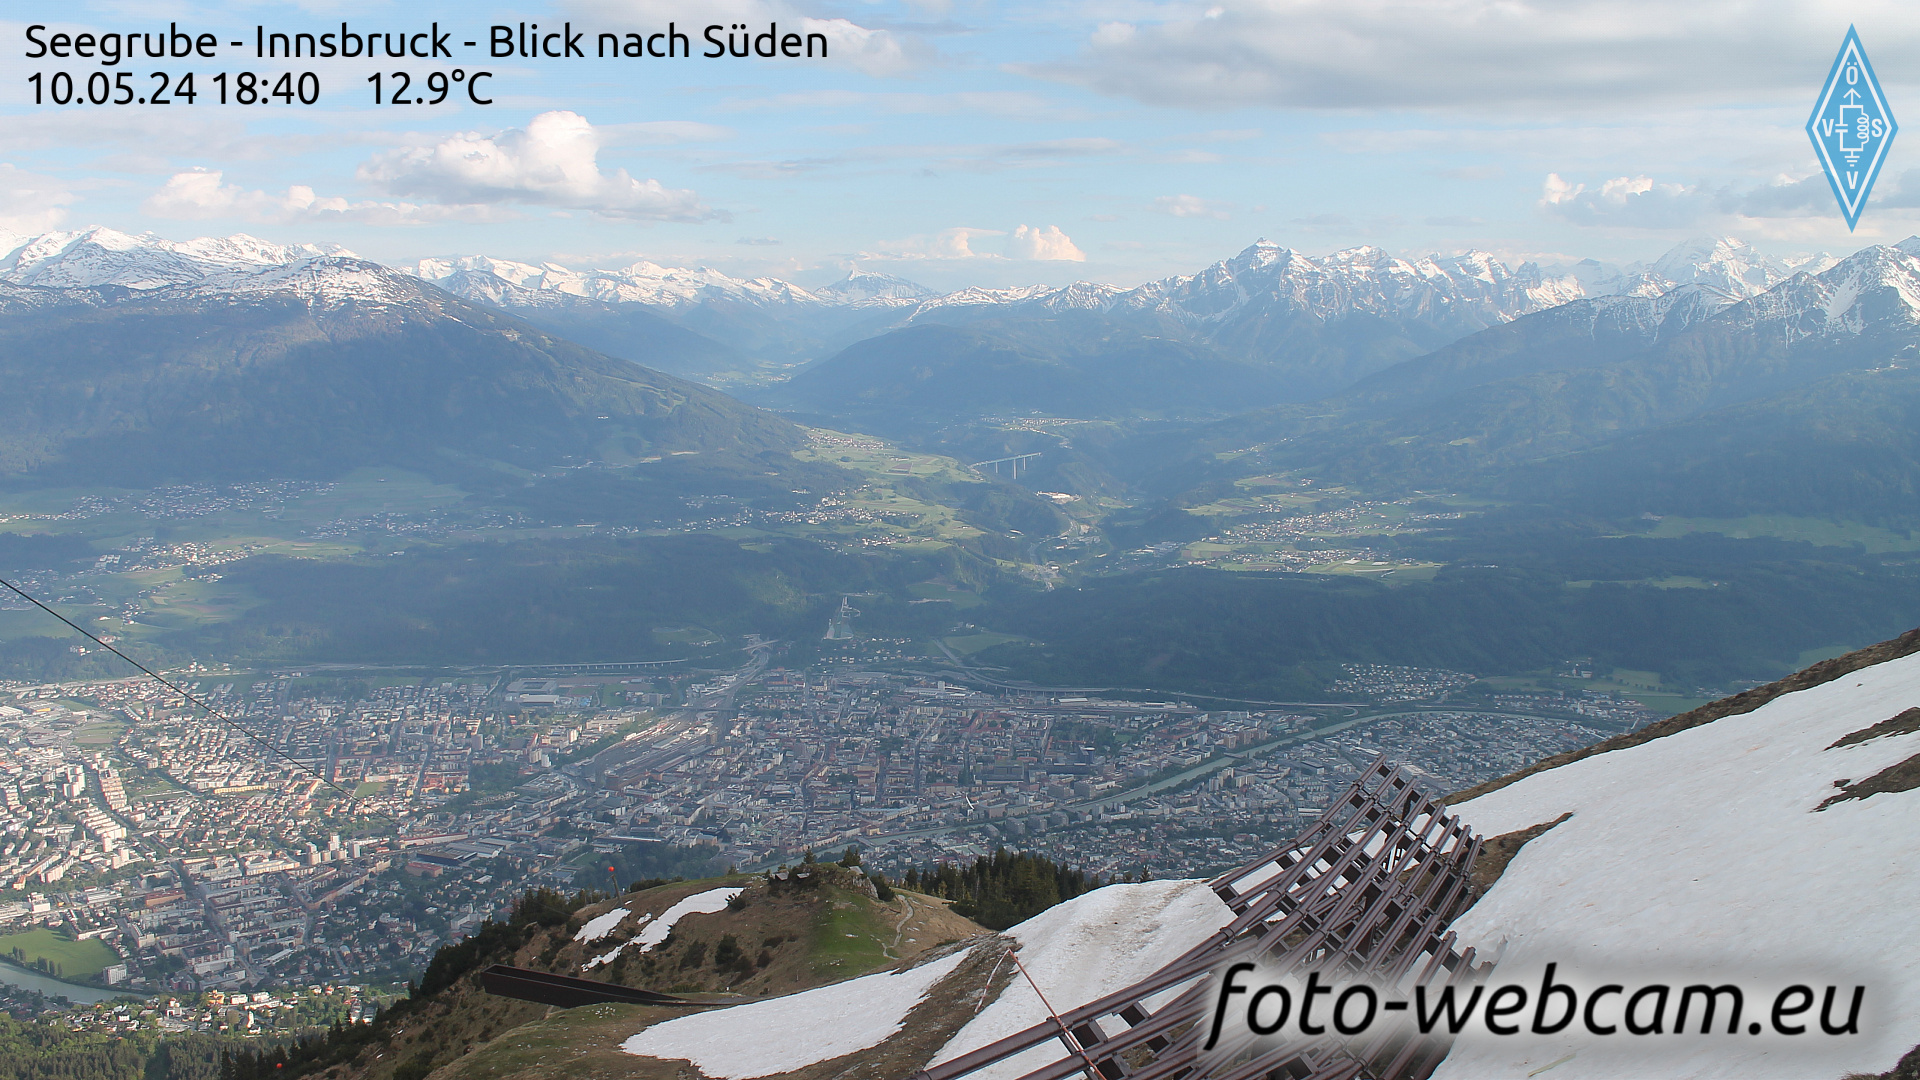 Innsbruck Dom. 18:48